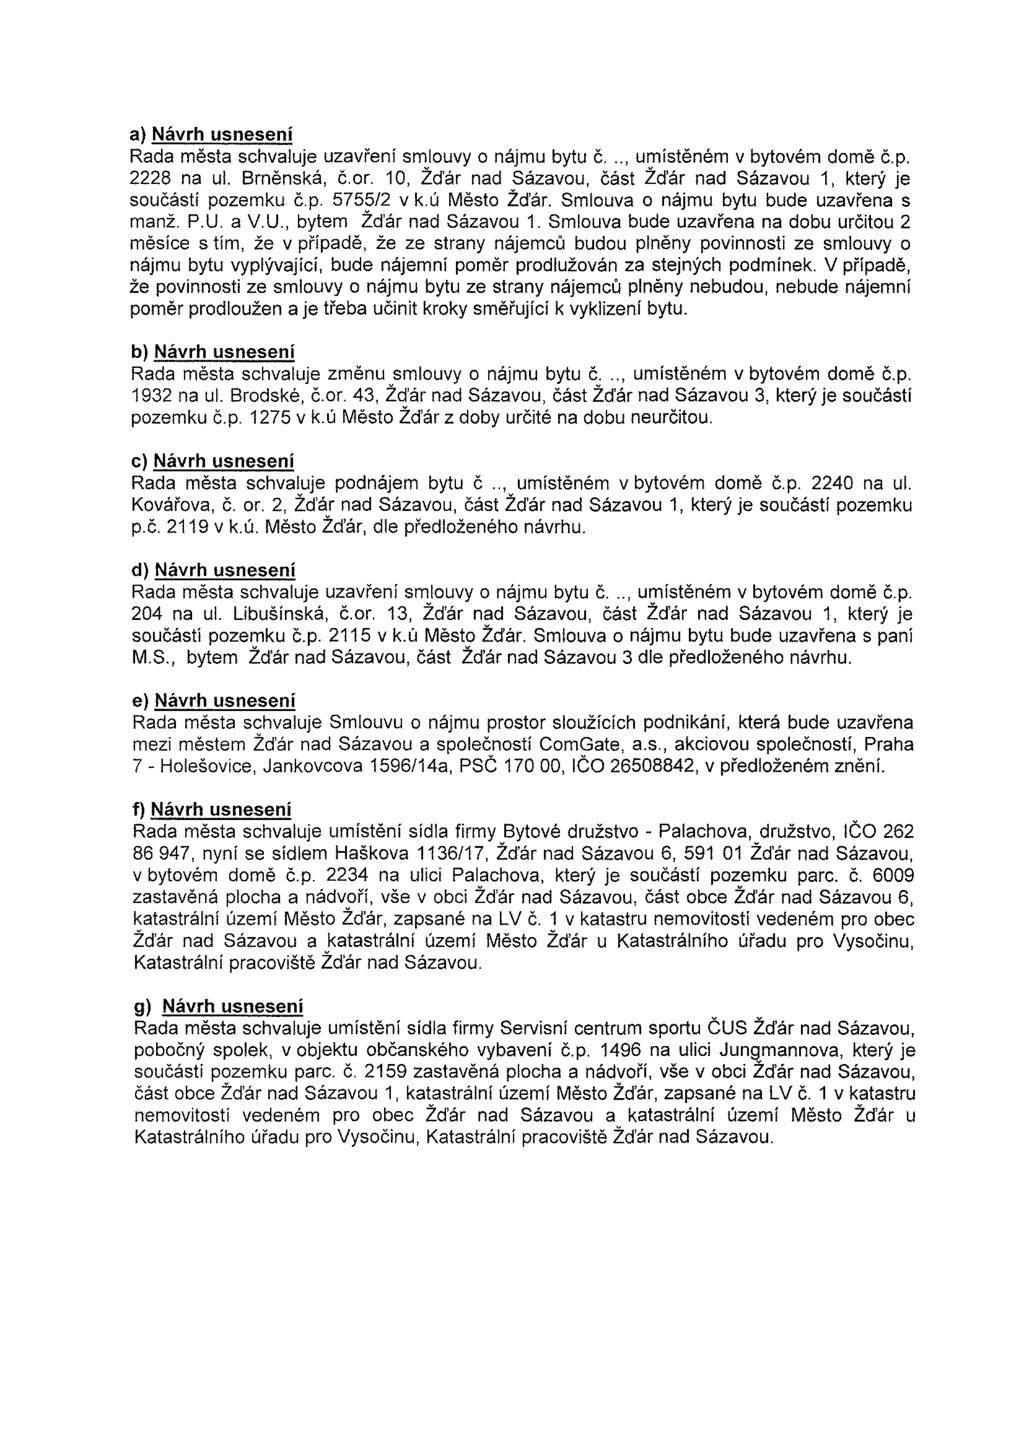 a) Návrh usnesení Rada města schvaluje uzavření smlouvy o nájmu bytu č..., umístěném v bytovém domě č.p. 2228 na ul. Brněnská, č.or.